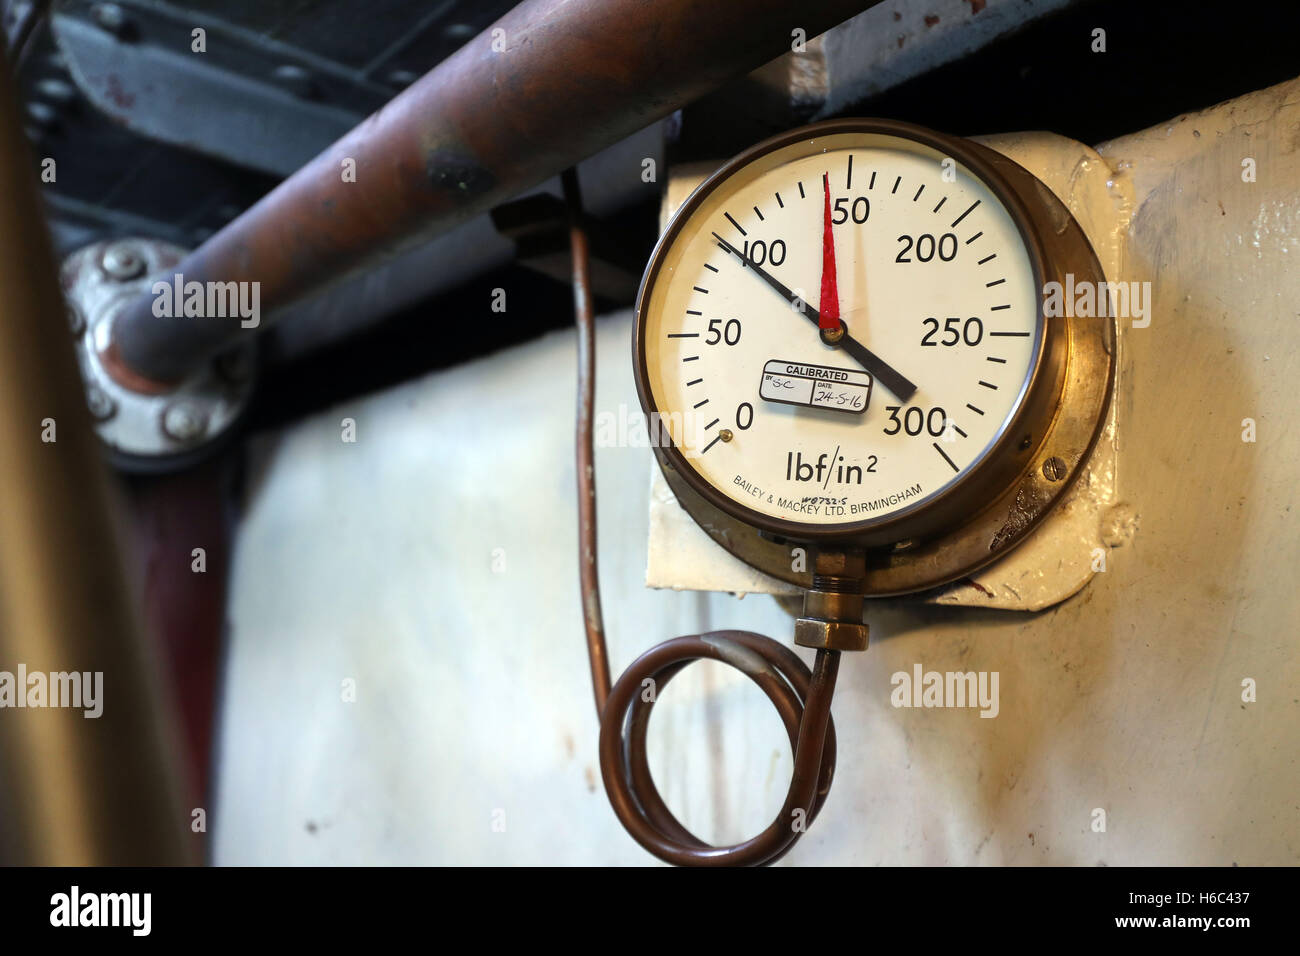 Il misuratore di pressione nella camera del motore a bordo della SND n. 4 draga a vapore che è in vapore presso il National Waterways Museum in Gloucester, a incoraggiare un numero maggiore di appassionati al museo. Foto Stock